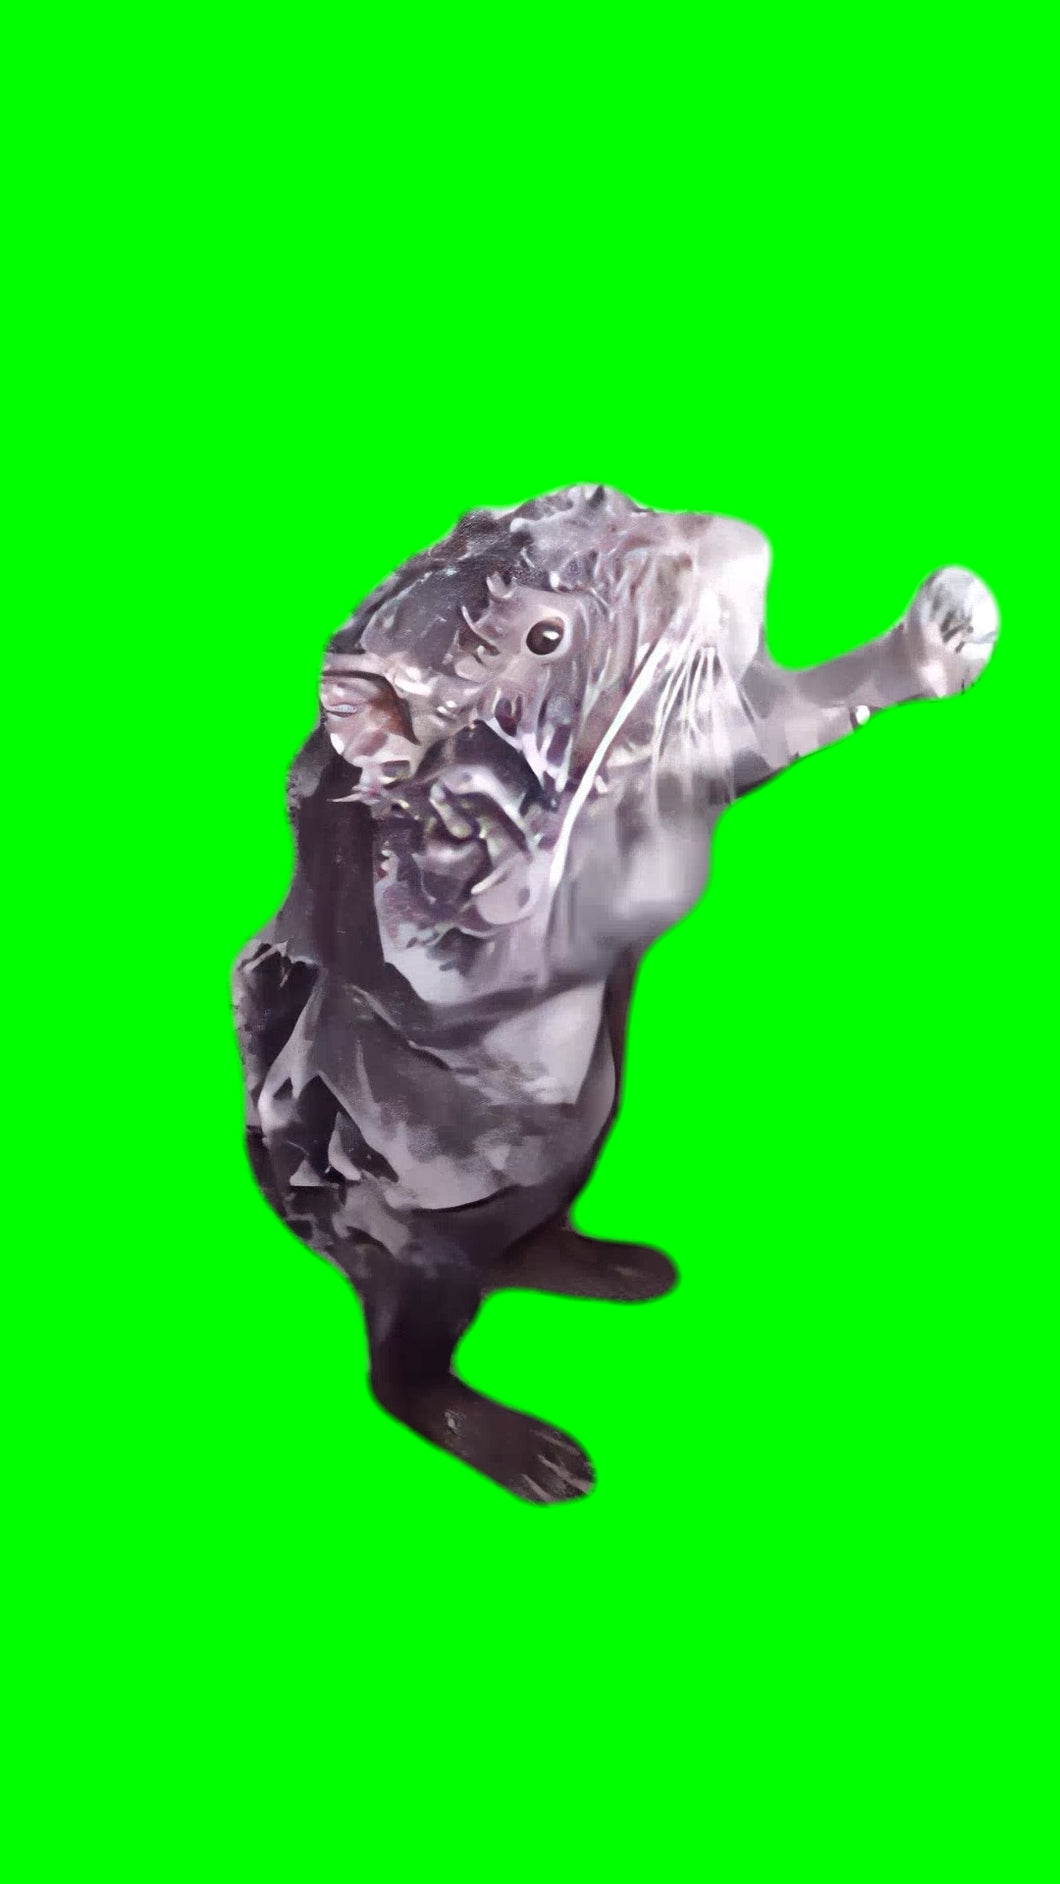 Rat Showering Itself (Green Screen)